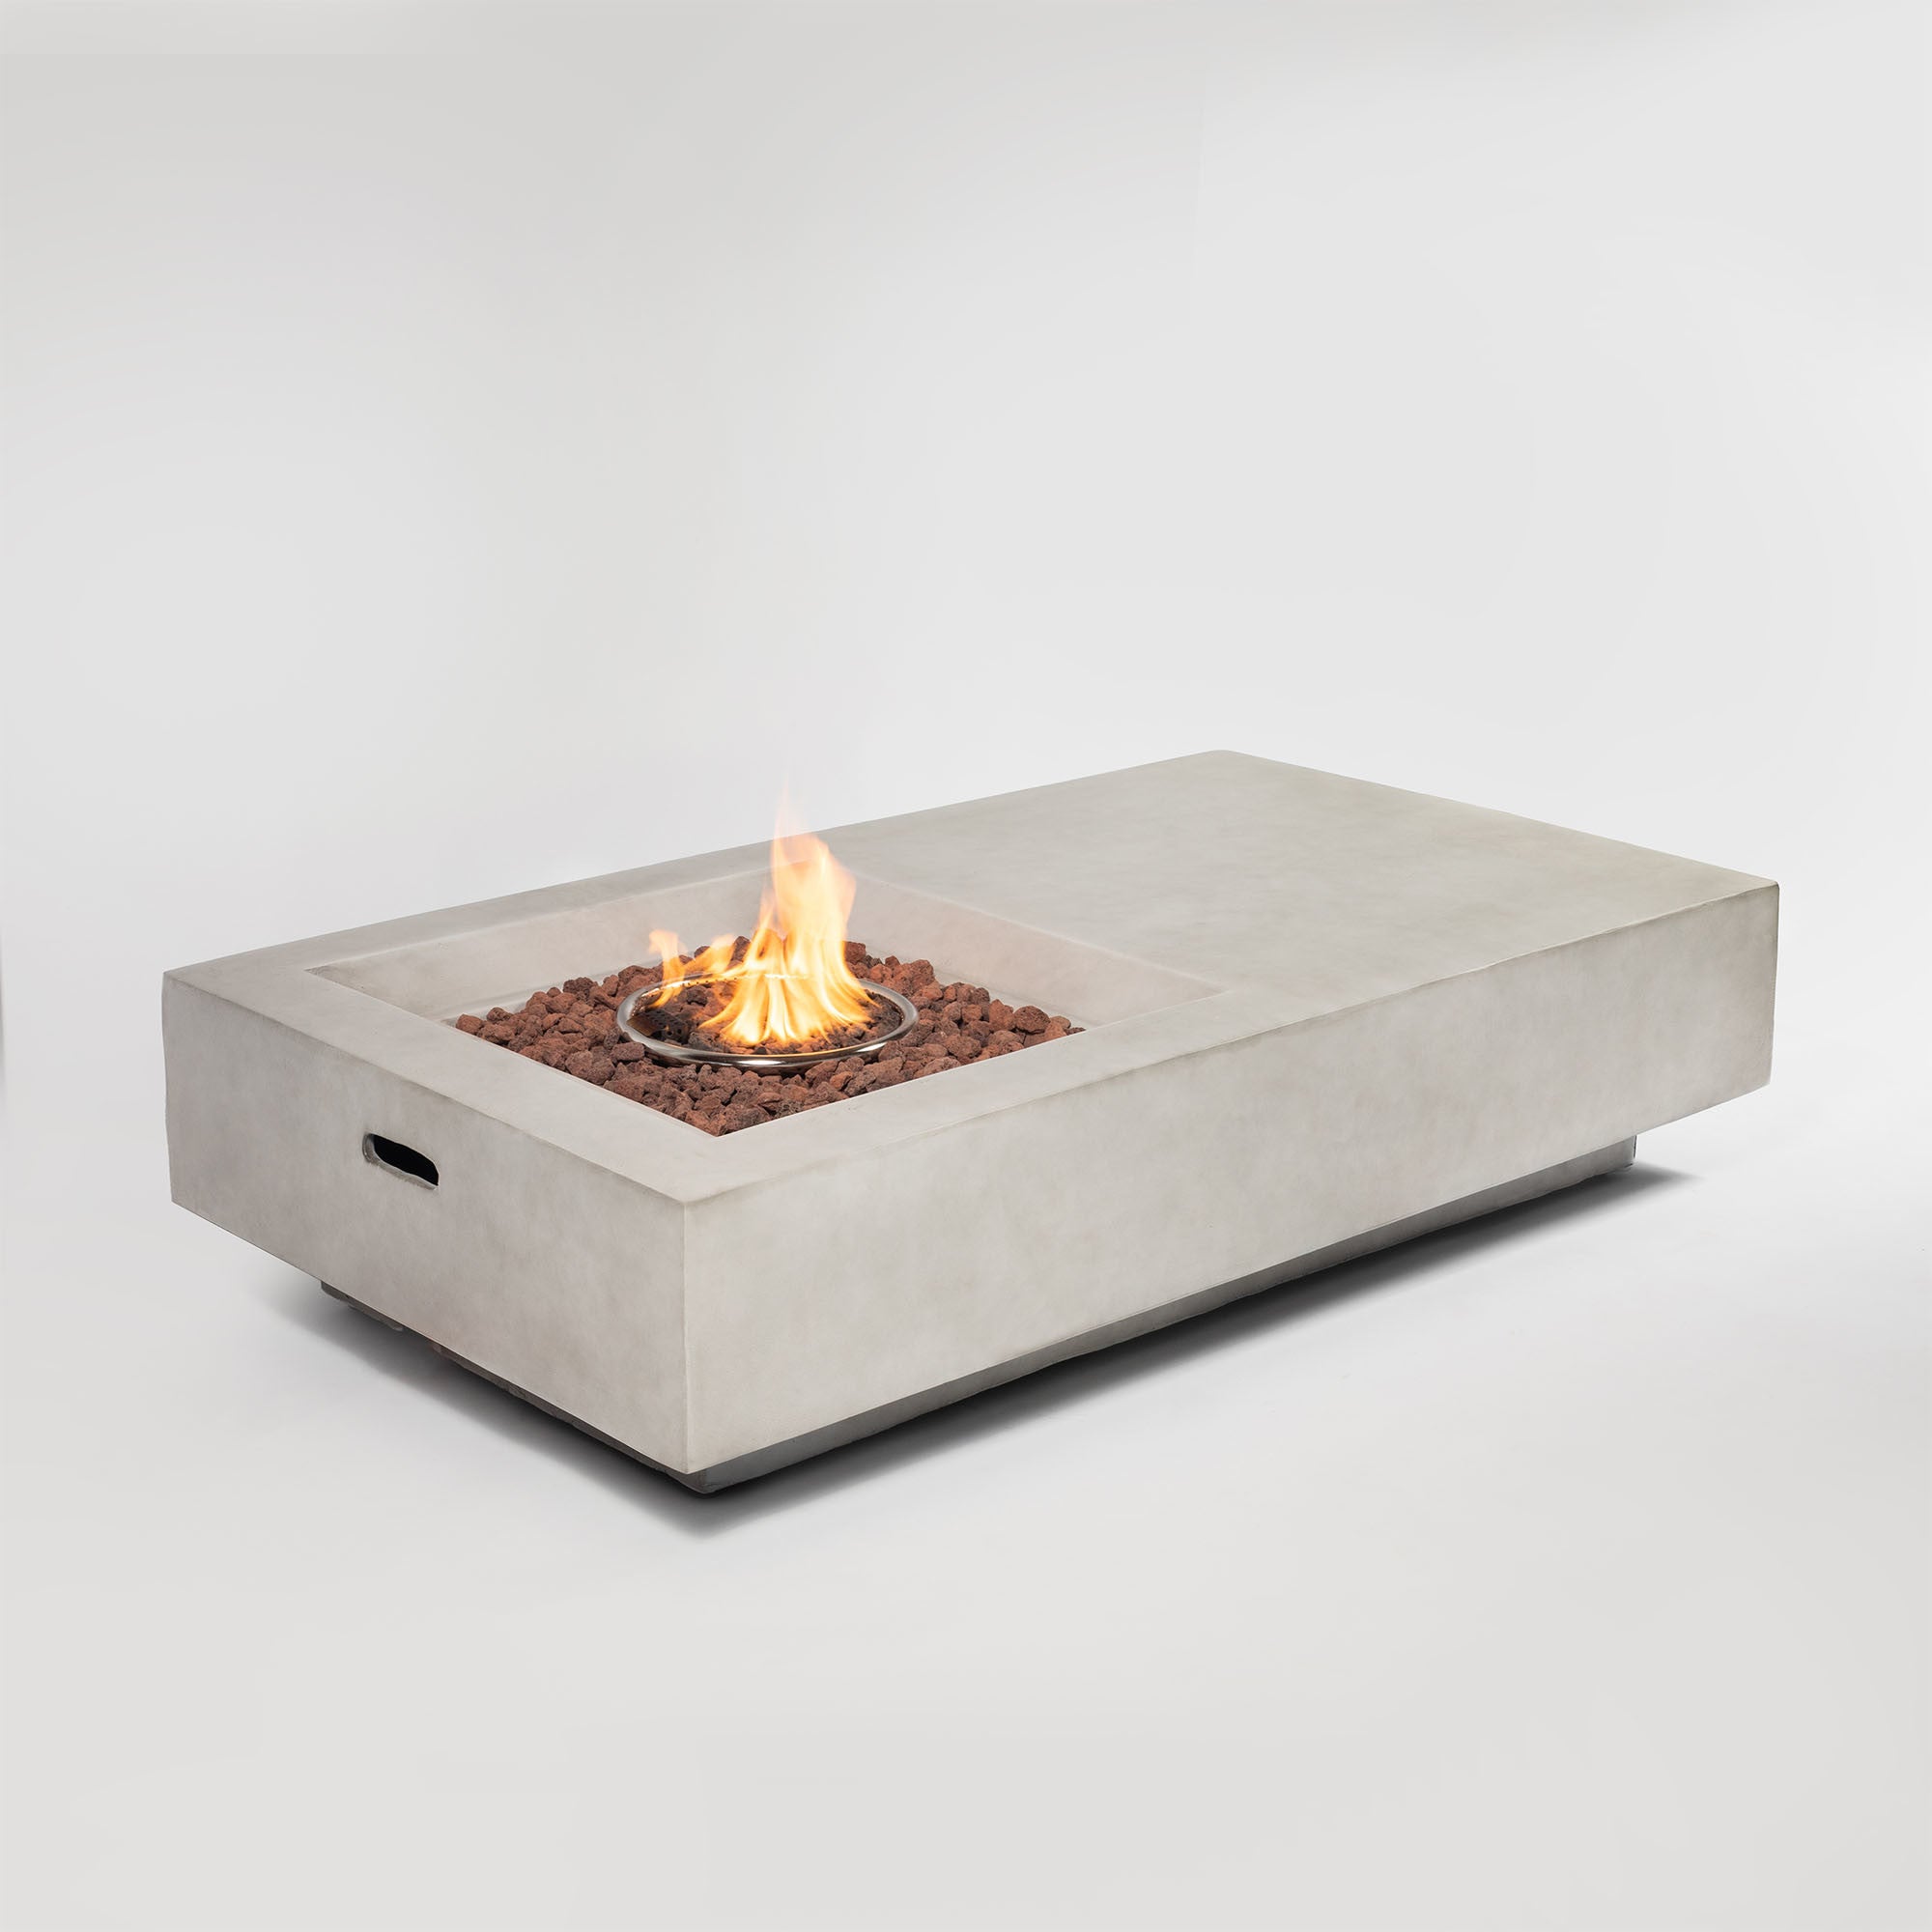 Concrete Fire Pit Table